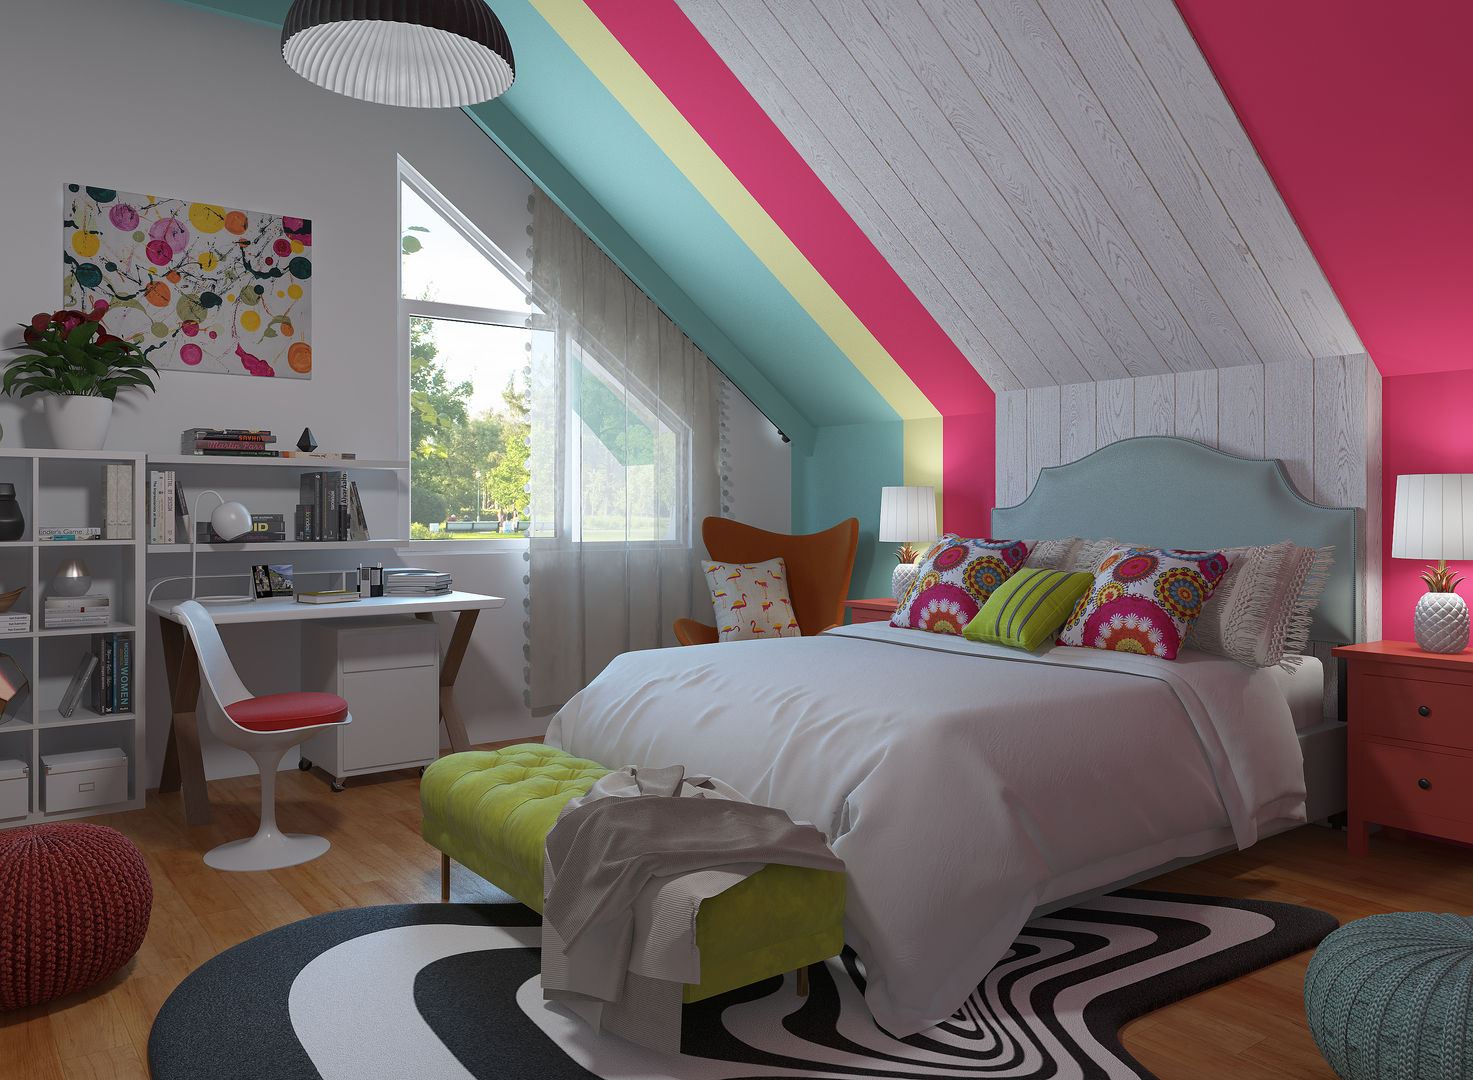 Dormitorio Pop Art - ecléctico homify Recámaras eclécticas bedroom,decorate bedroom,how to decorate,pop art style,pop art bedroom,3d design,interior design,rendering,home deco,colourful,customized designs